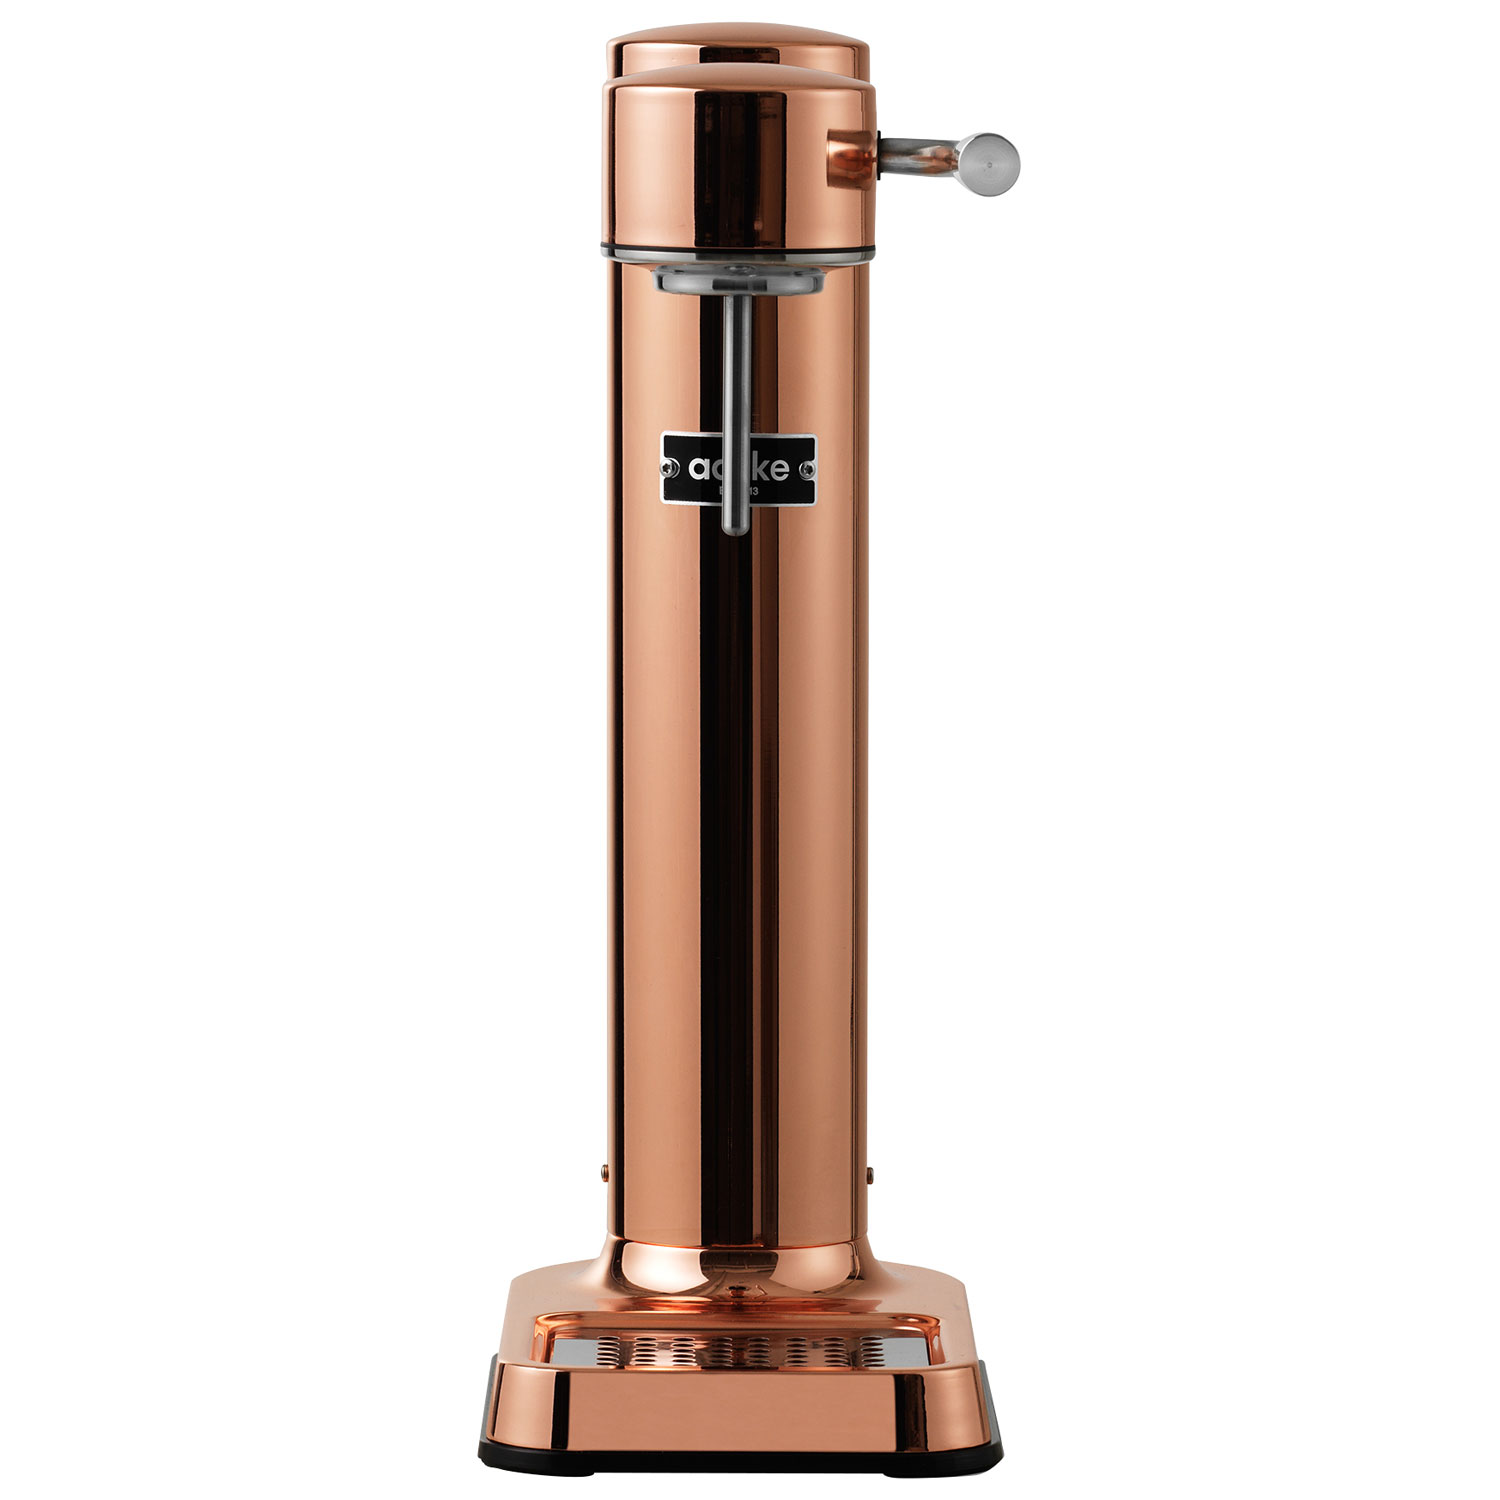 Aarke - Machine à eau pétillante Carbonator 3 Edition cuivre